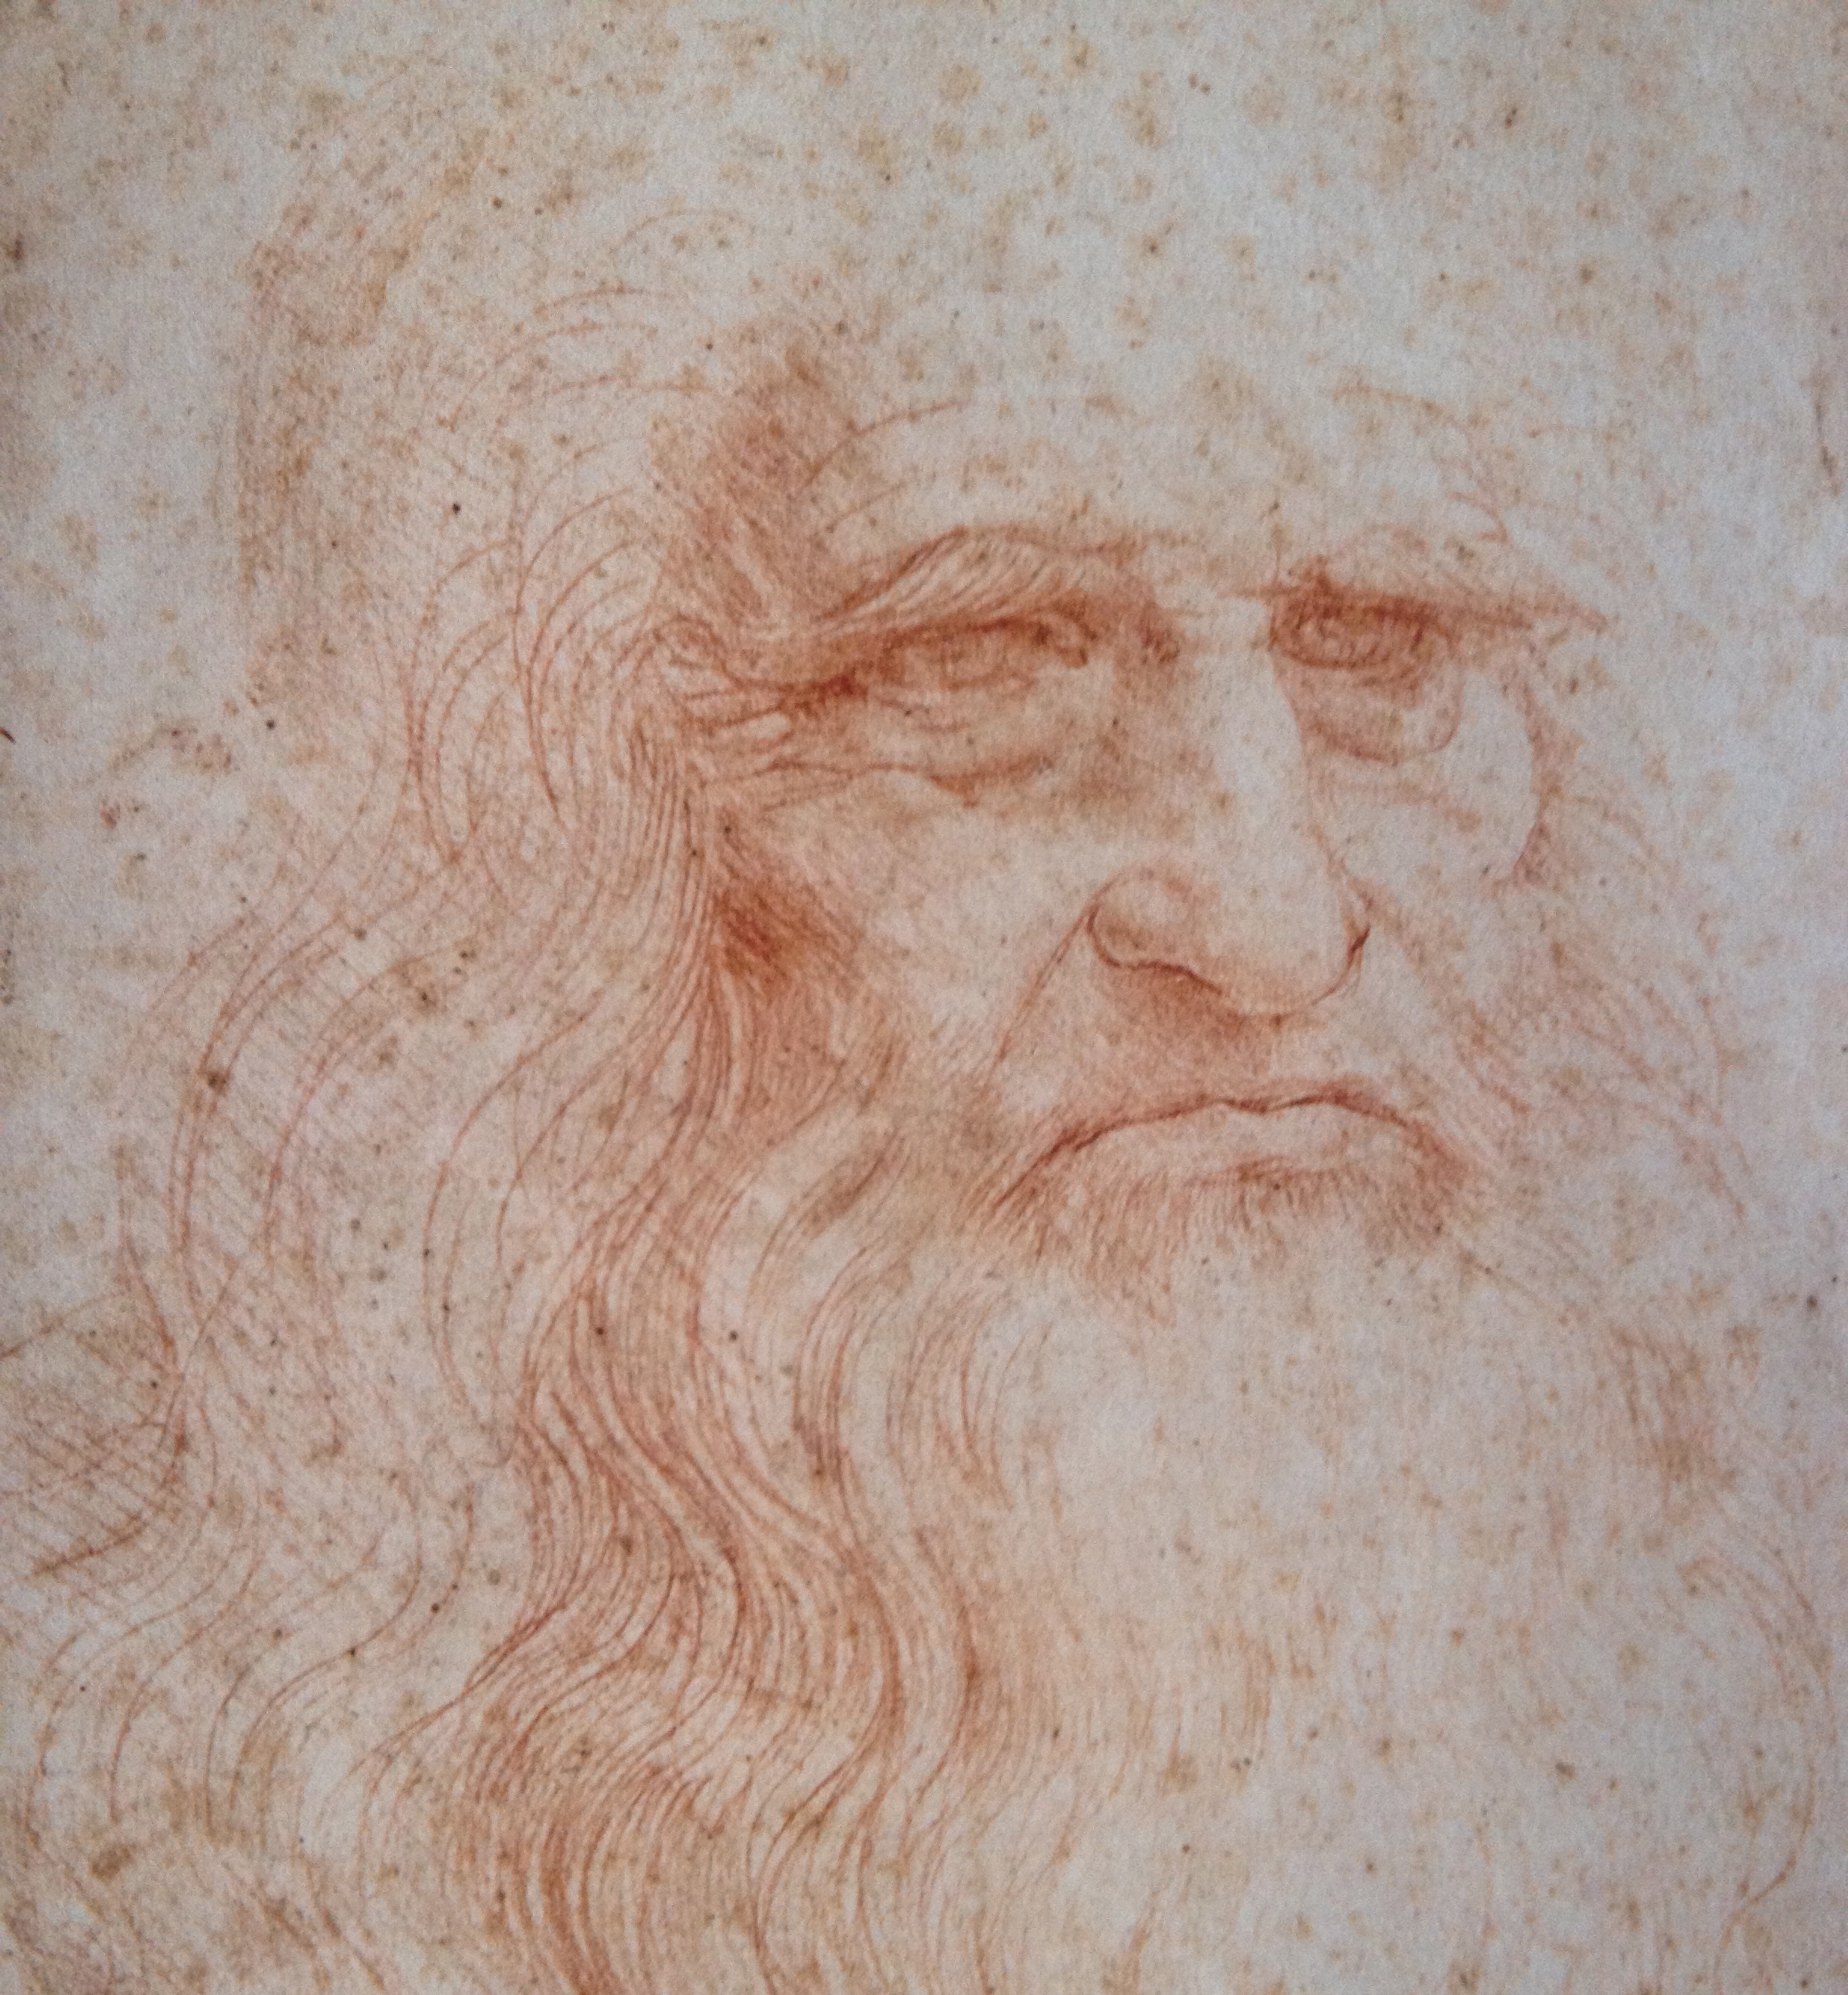 Notes on Leonardo da Vinci